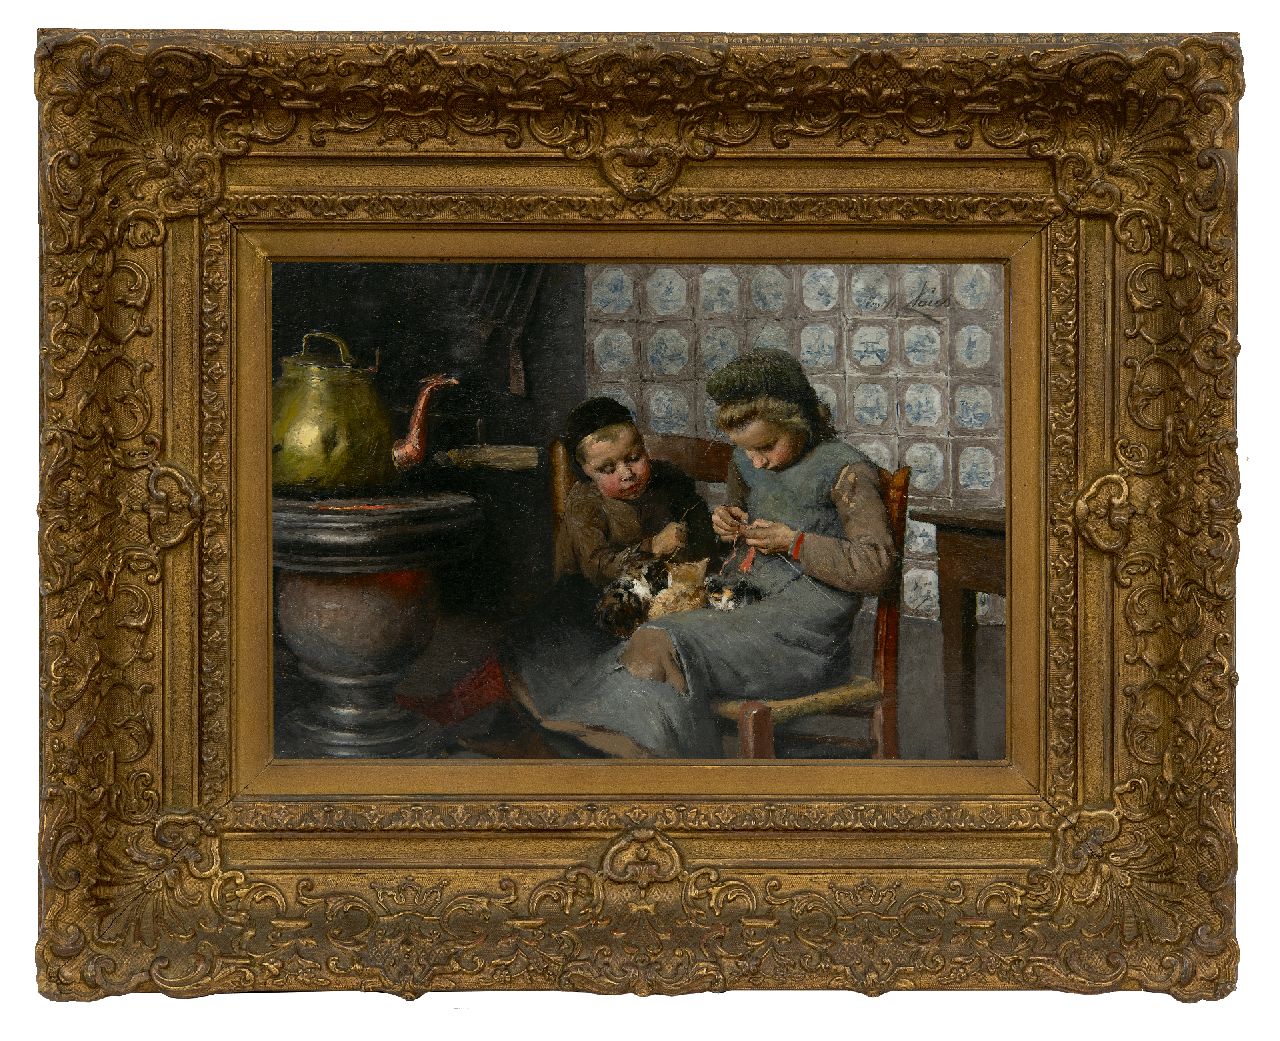 Claus E.  | Emile Claus, Meisjes bij de kachel, olieverf op doek 23,1 x 34,2 cm, gesigneerd rechtsboven